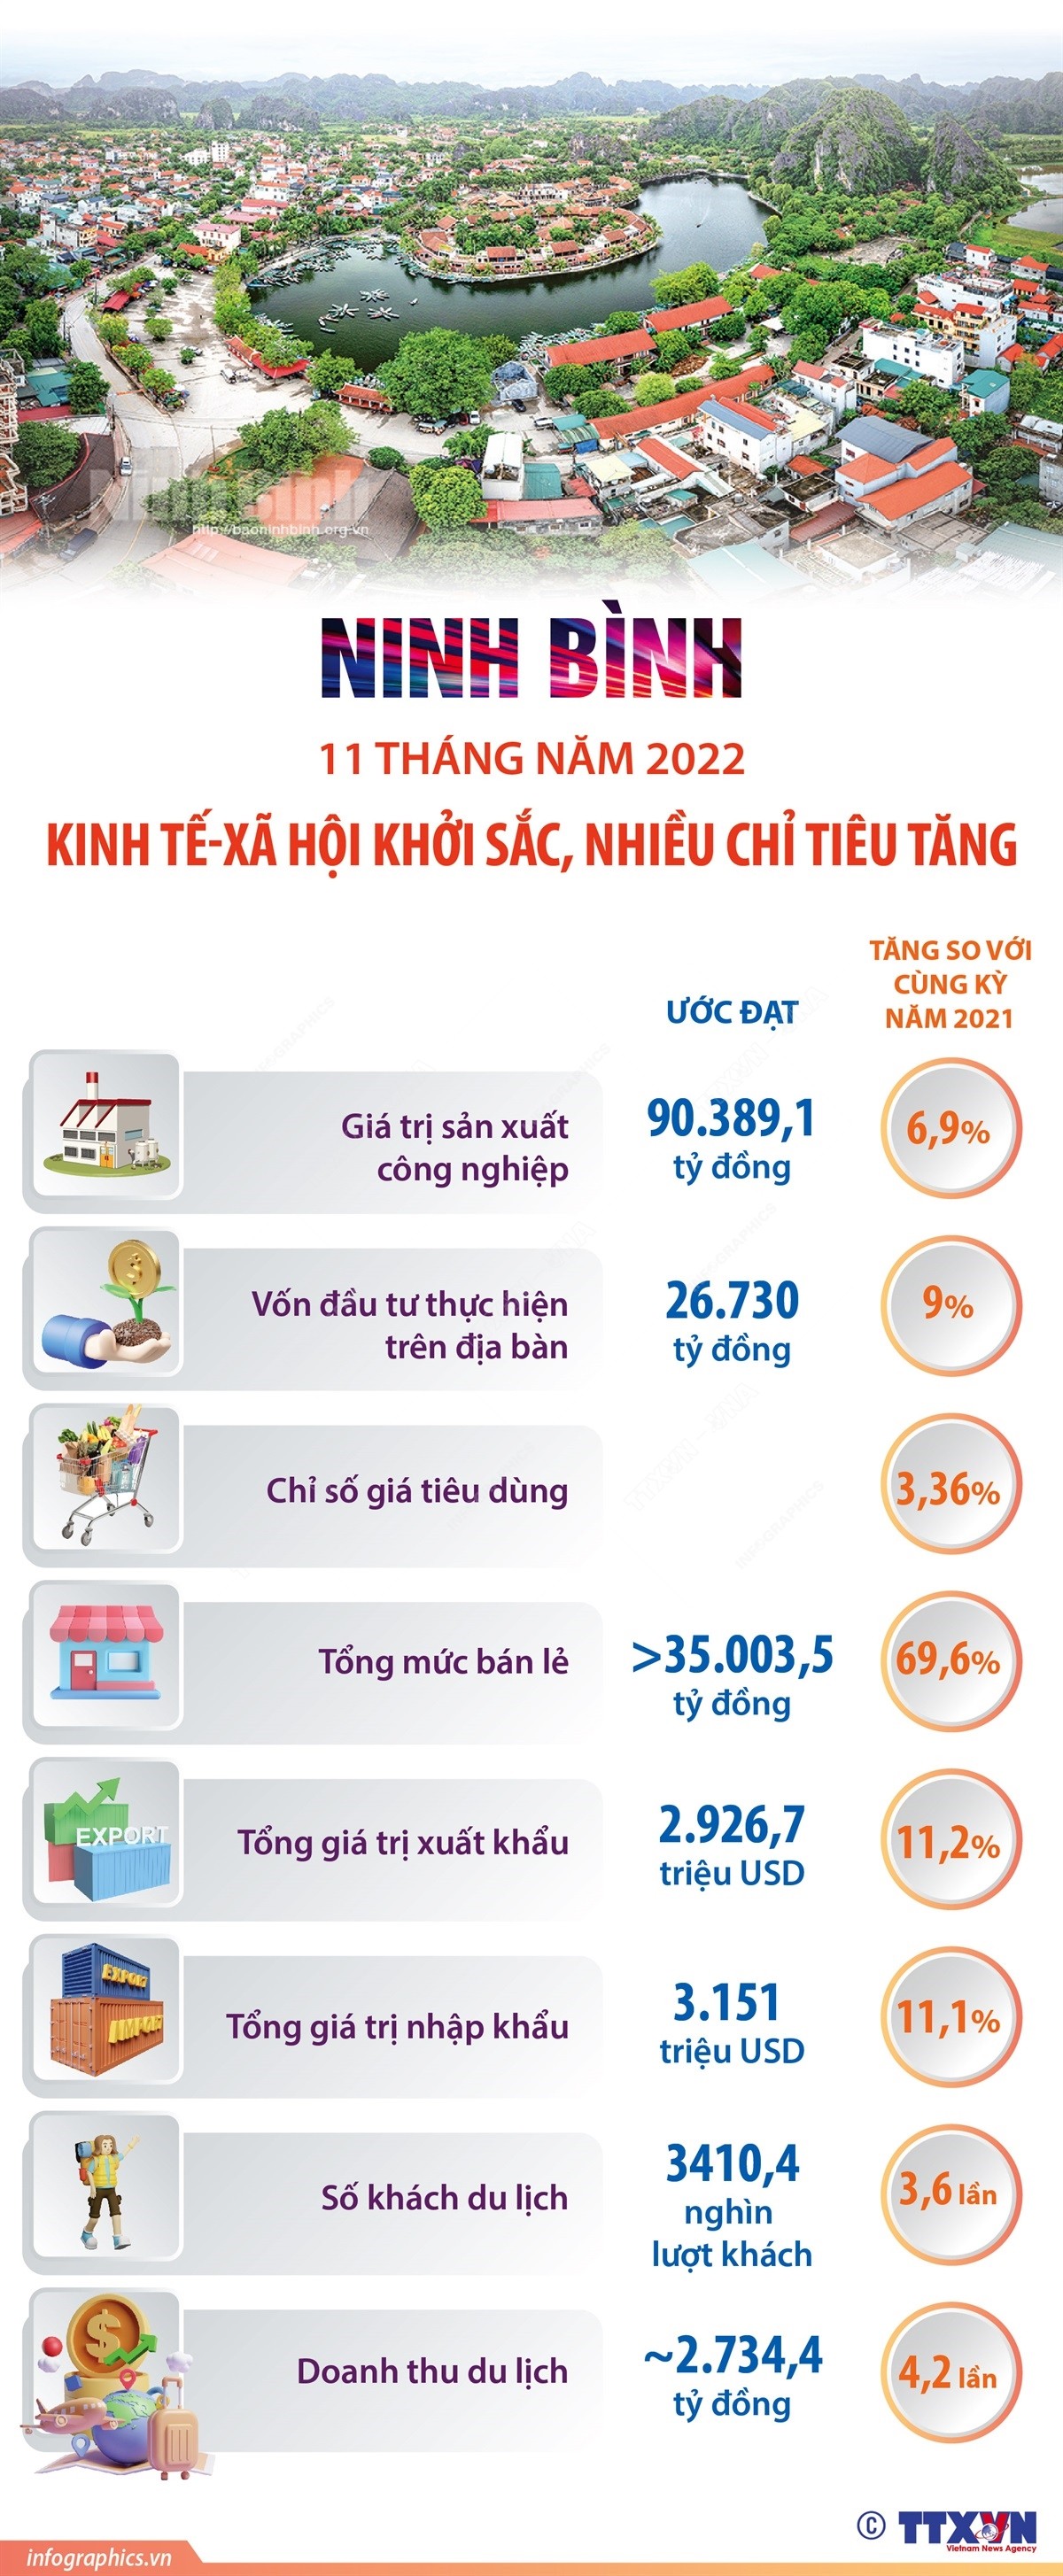 11 tháng năm 2022: Kinh tế-xã hội Ninh Bình khởi sắc, nhiều chỉ tiêu tăng